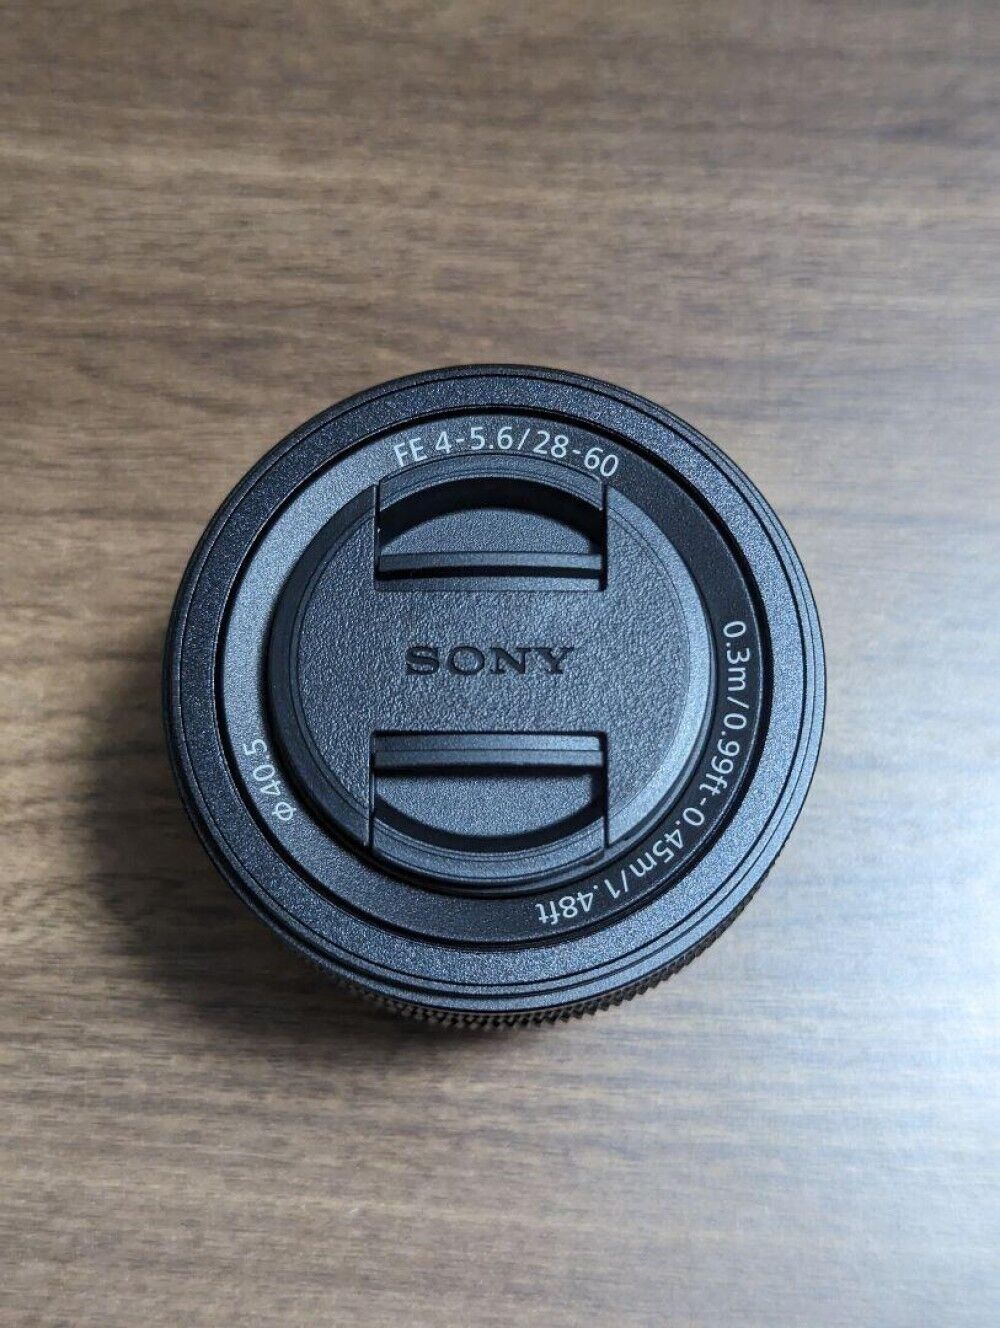 Sony Standard Zoom Lens Full Size Fe 28-60Mm F4-5.6 Genuine Lens SEL2860 Black